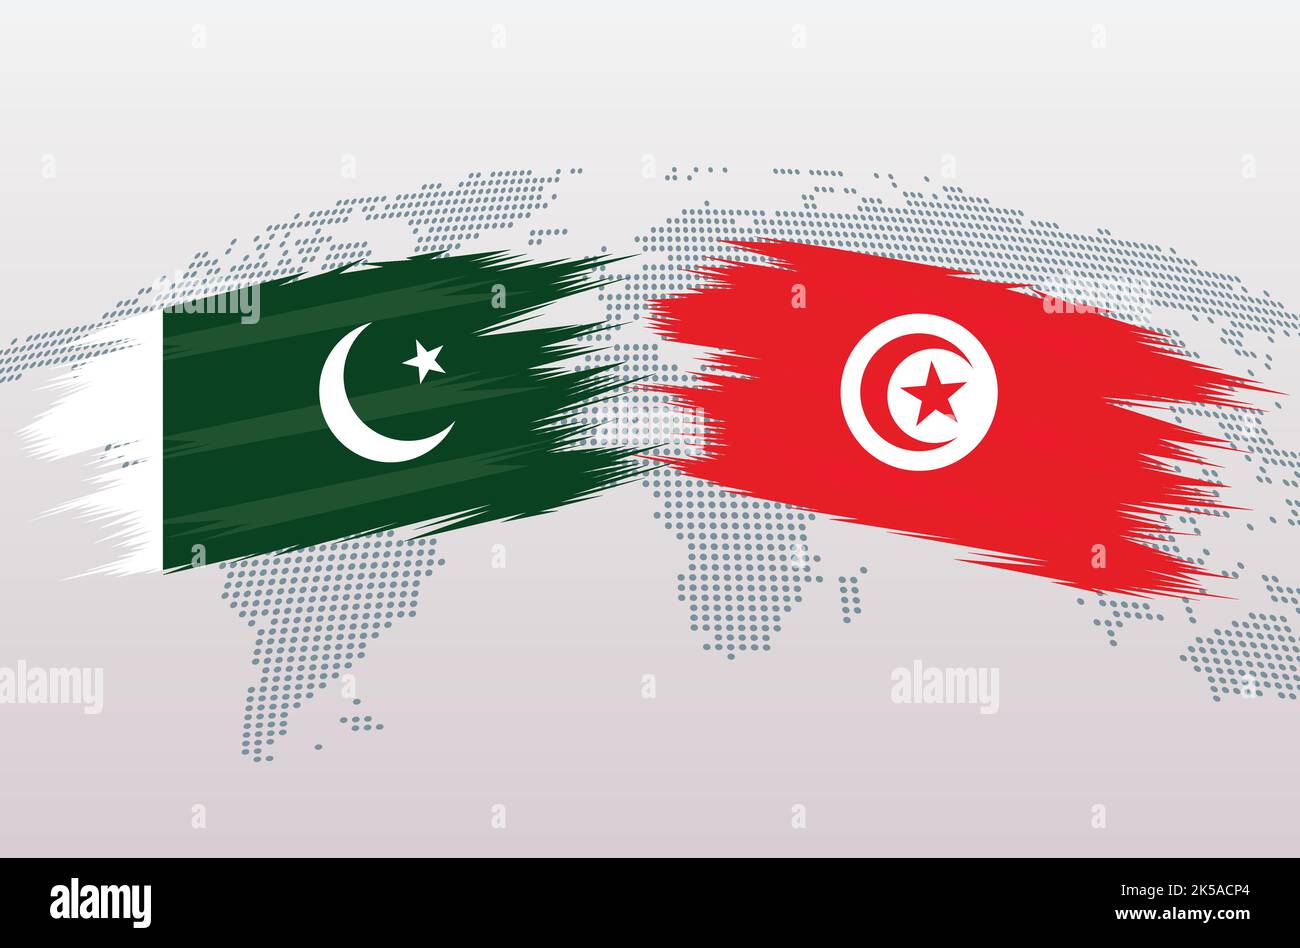 Banderas DE PAKISTÁN VS TÚNE República Islámica del Pakistán VS banderas de Túnez, aisladas sobre fondo gris del mapa mundial. Ilustración vectorial. Ilustración del Vector